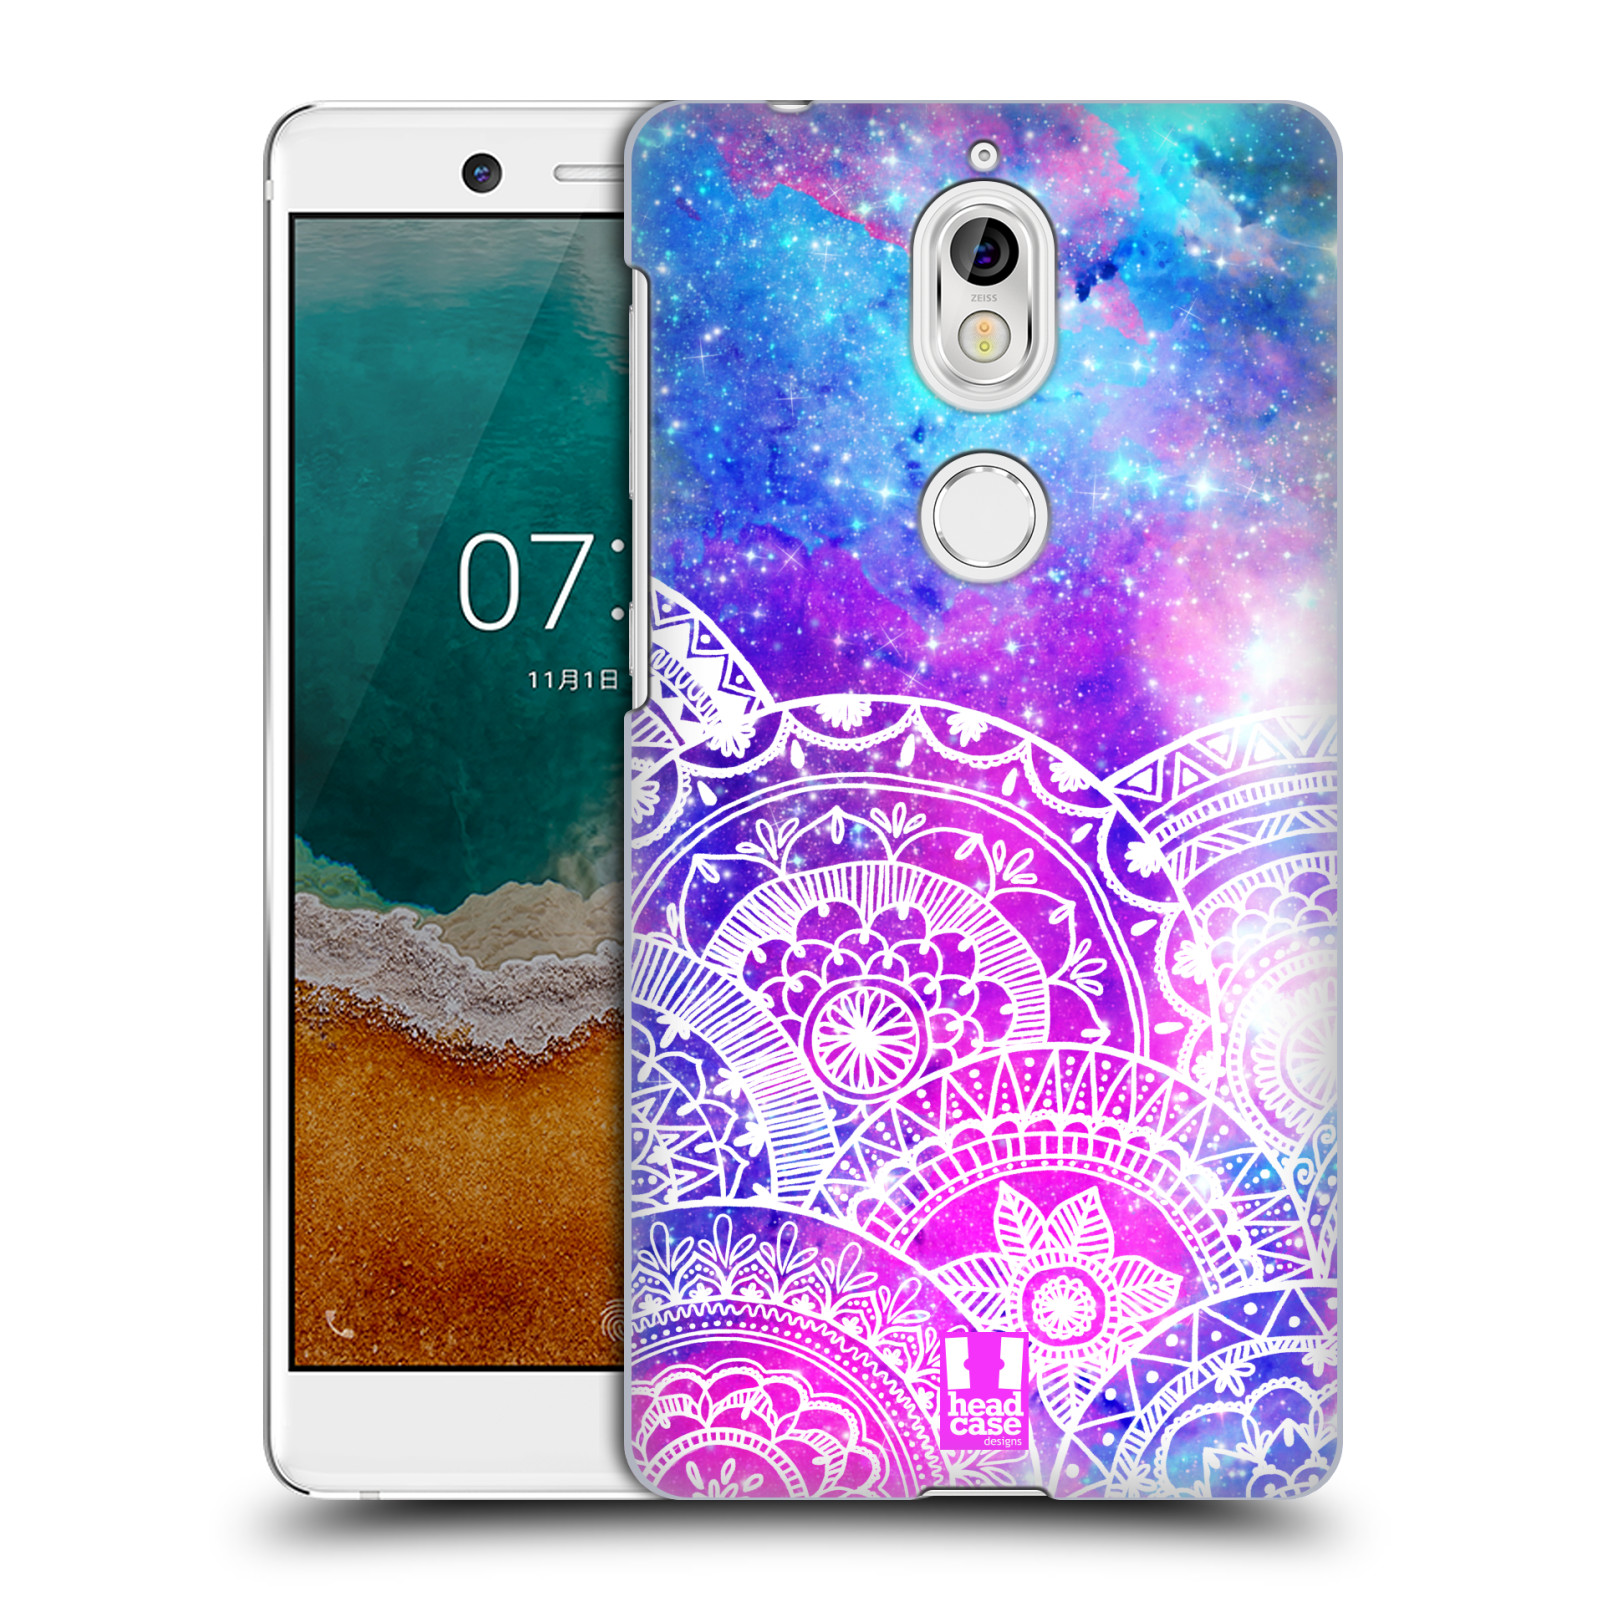 Pouzdro na mobil Nokia 7 - HEAD CASE - Mandala nekonečná galaxie